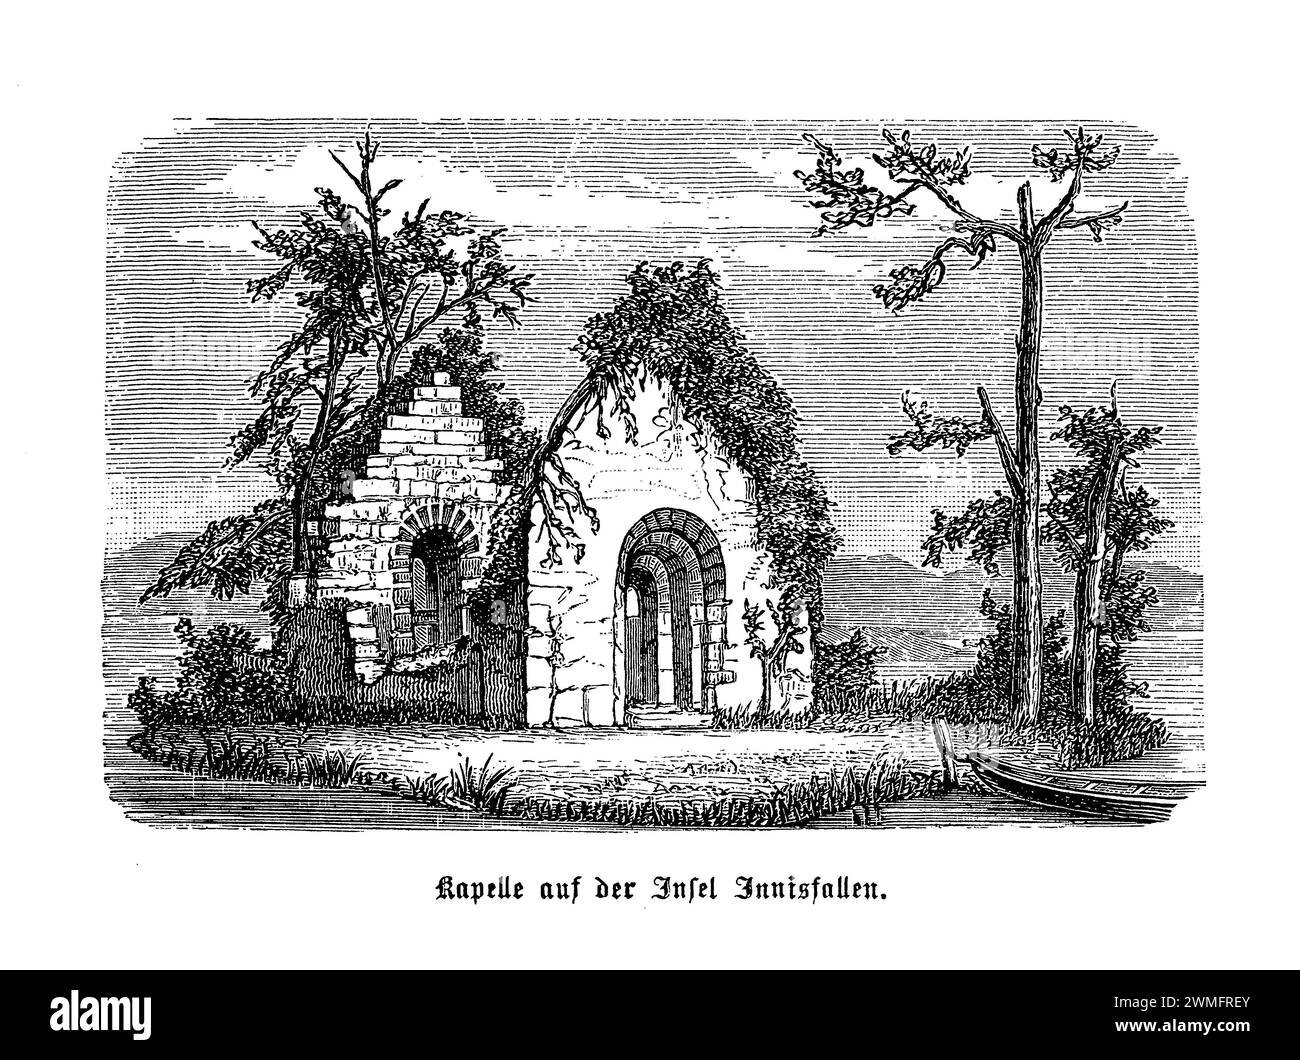 Les ruines de la chapelle sur l'île d'Innisfell, nichées dans les eaux sereines de Lough Leane dans le parc national de Killarney, en Irlande, sont un rappel poignant de la riche histoire monastique du pays. Cet endroit isolé abritait autrefois l'abbaye d'Innisfell, fondée au VIIe siècle par un certain Finian le Lepr, qui a joué un rôle important dans l'érudition irlandaise et l'écriture des Annales d'Innisfell, une chronique des débuts de l'histoire irlandaise. Les ruines, avec leurs murs en ruine et leur lierre envahi par la végétation, évoquent un sentiment d'intemporalité et de réconfort spirituel, se tenant comme des témoins silencieux de siècles de prière an Banque D'Images